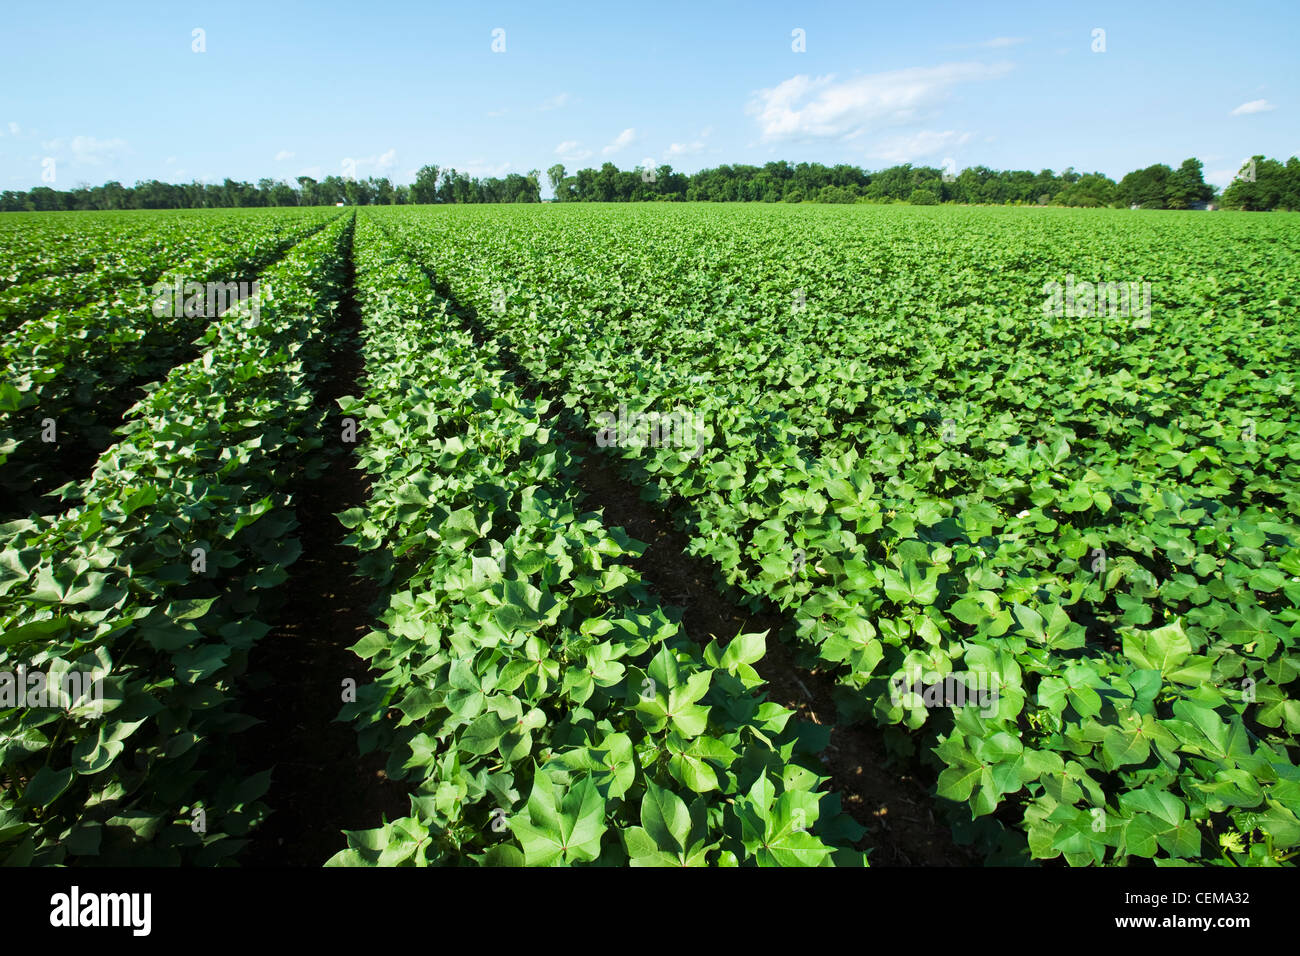 Landwirtschaft - große Mitte Wachstum Baumwollfeld in der fortgeschrittenen Boll eingestellte Stufe / in der Nähe von England, Arkansas, USA. Stockfoto